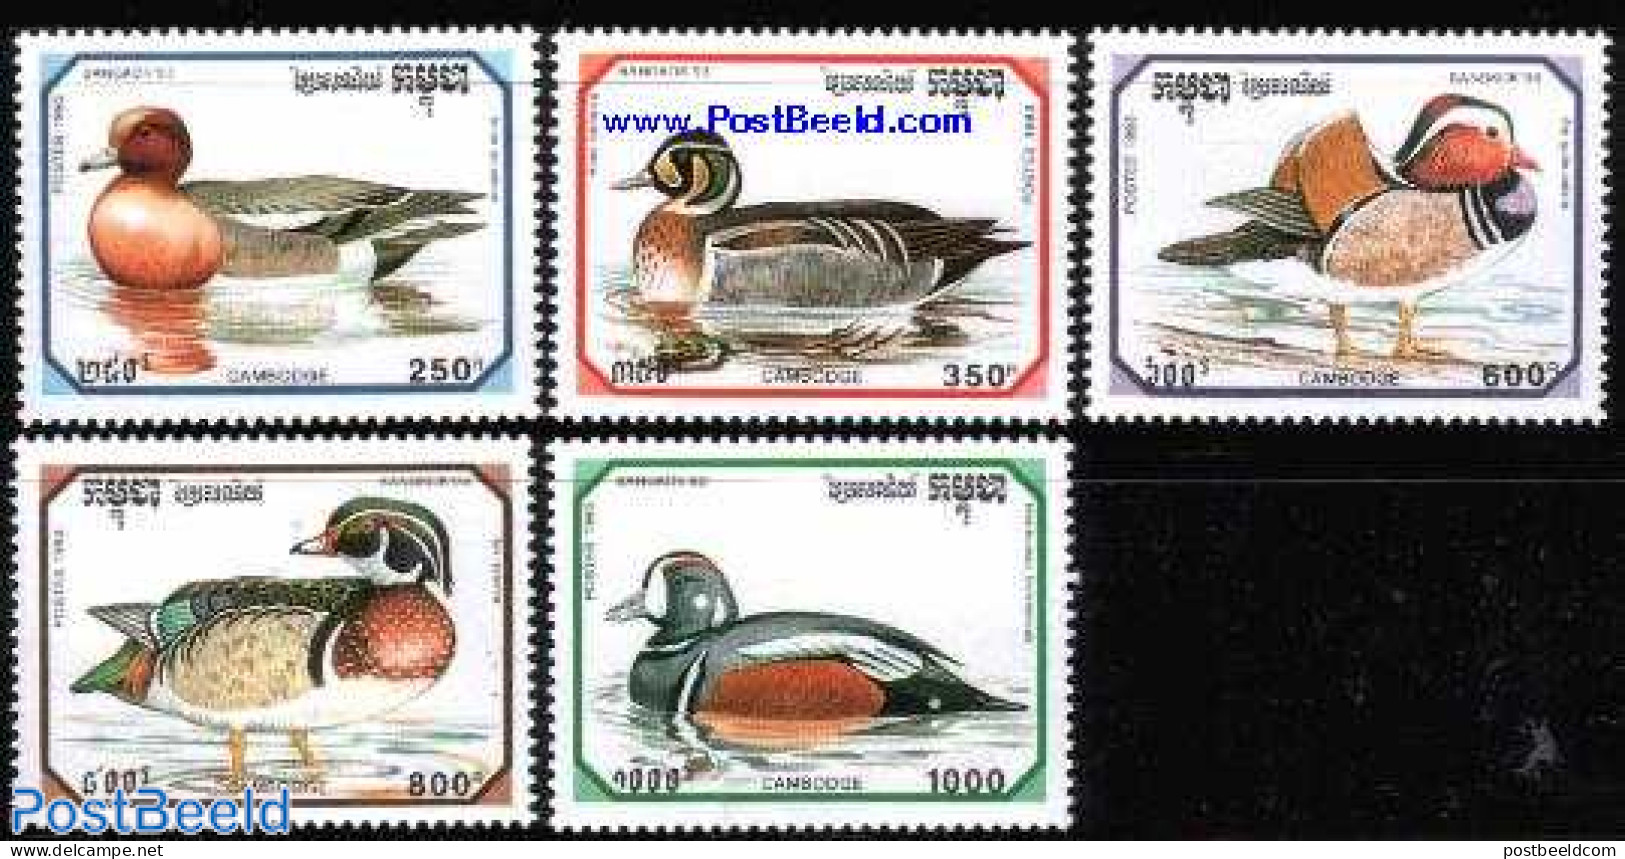 Cambodia 1993 Bangkok 93, Ducks 5v, Mint NH, Nature - Birds - Ducks - Cambodia